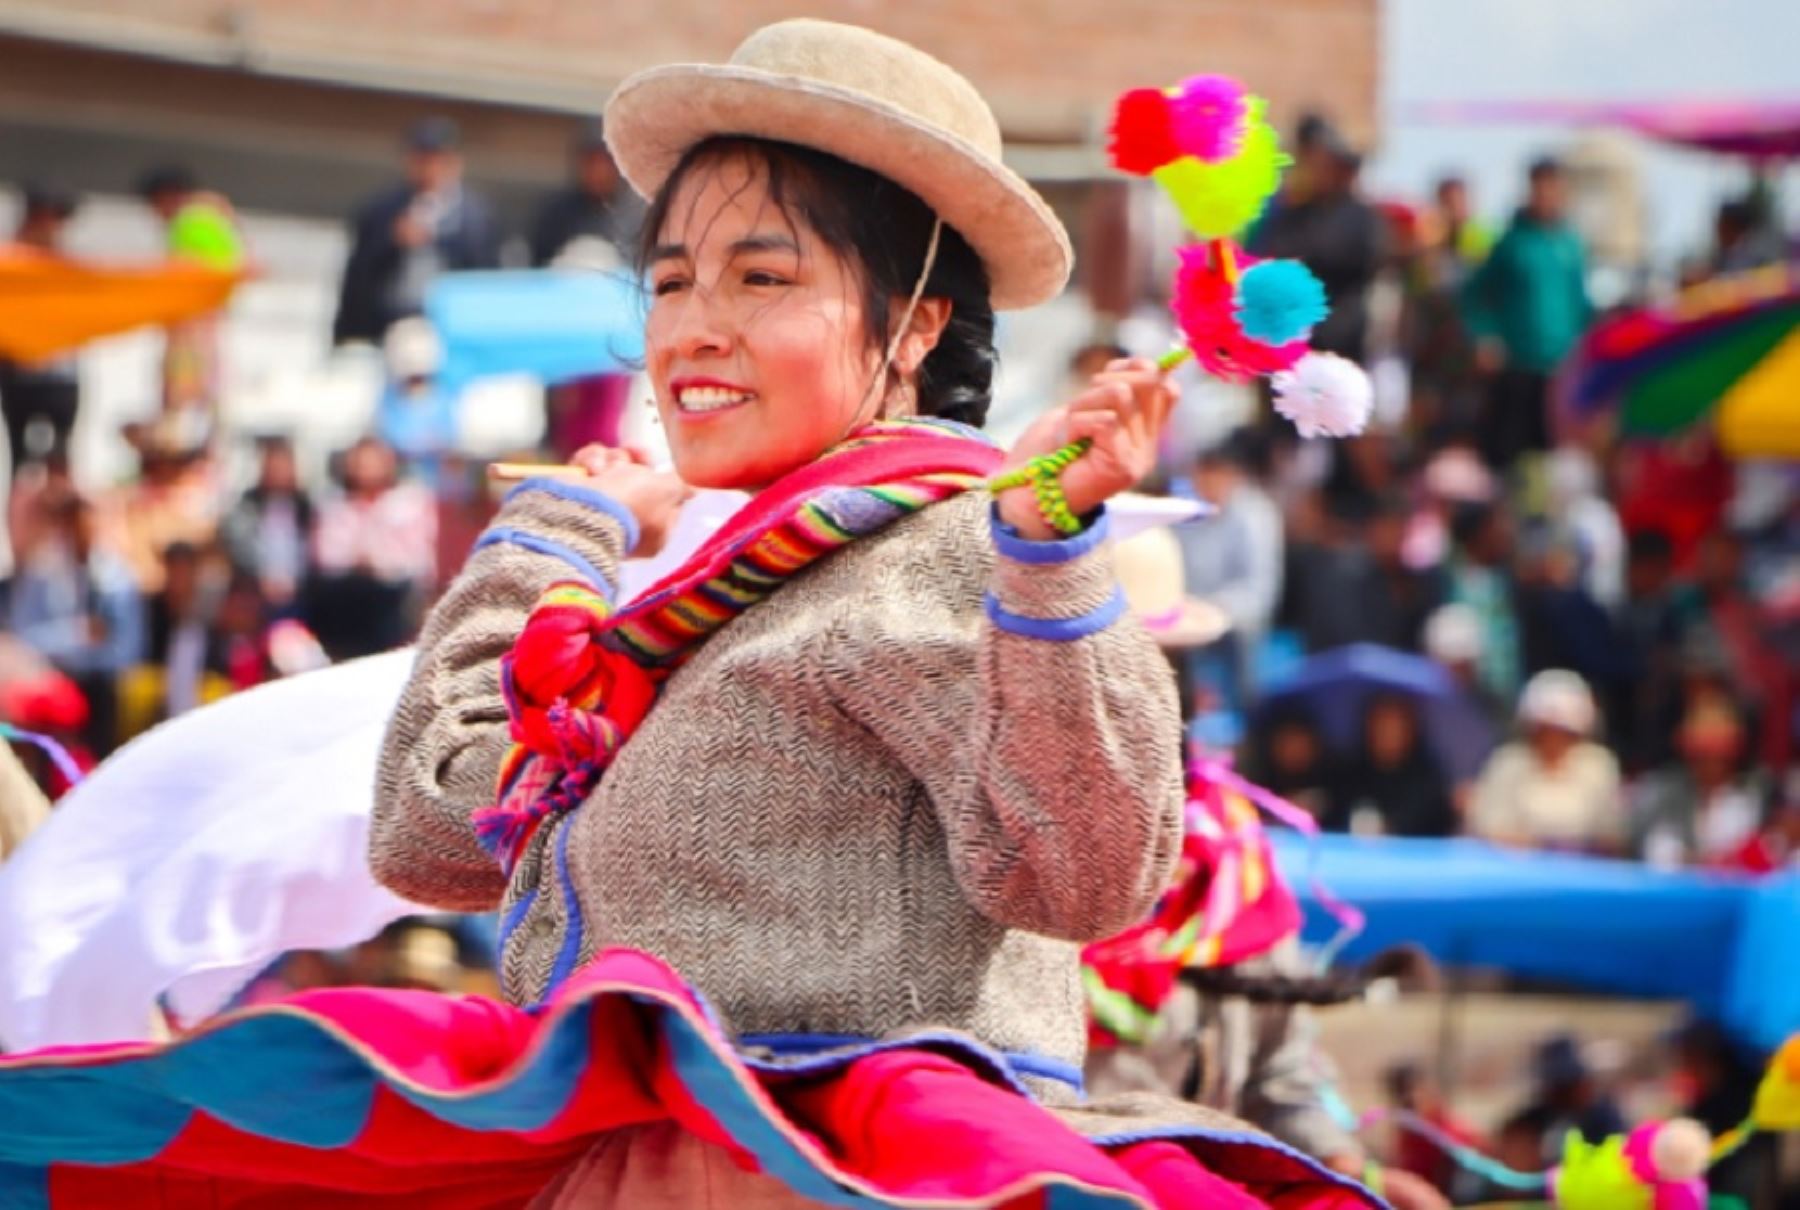 Conocido como el “Carnaval más extenso y fastuoso del Perú” y una de las festividades costumbristas más emblemáticas y multitudinarias de la región Puno, el carnaval de Juliaca se desarrolla sin pausa durante siete días y desborda alegría contagiante, destellante colorido y riqueza cultural.